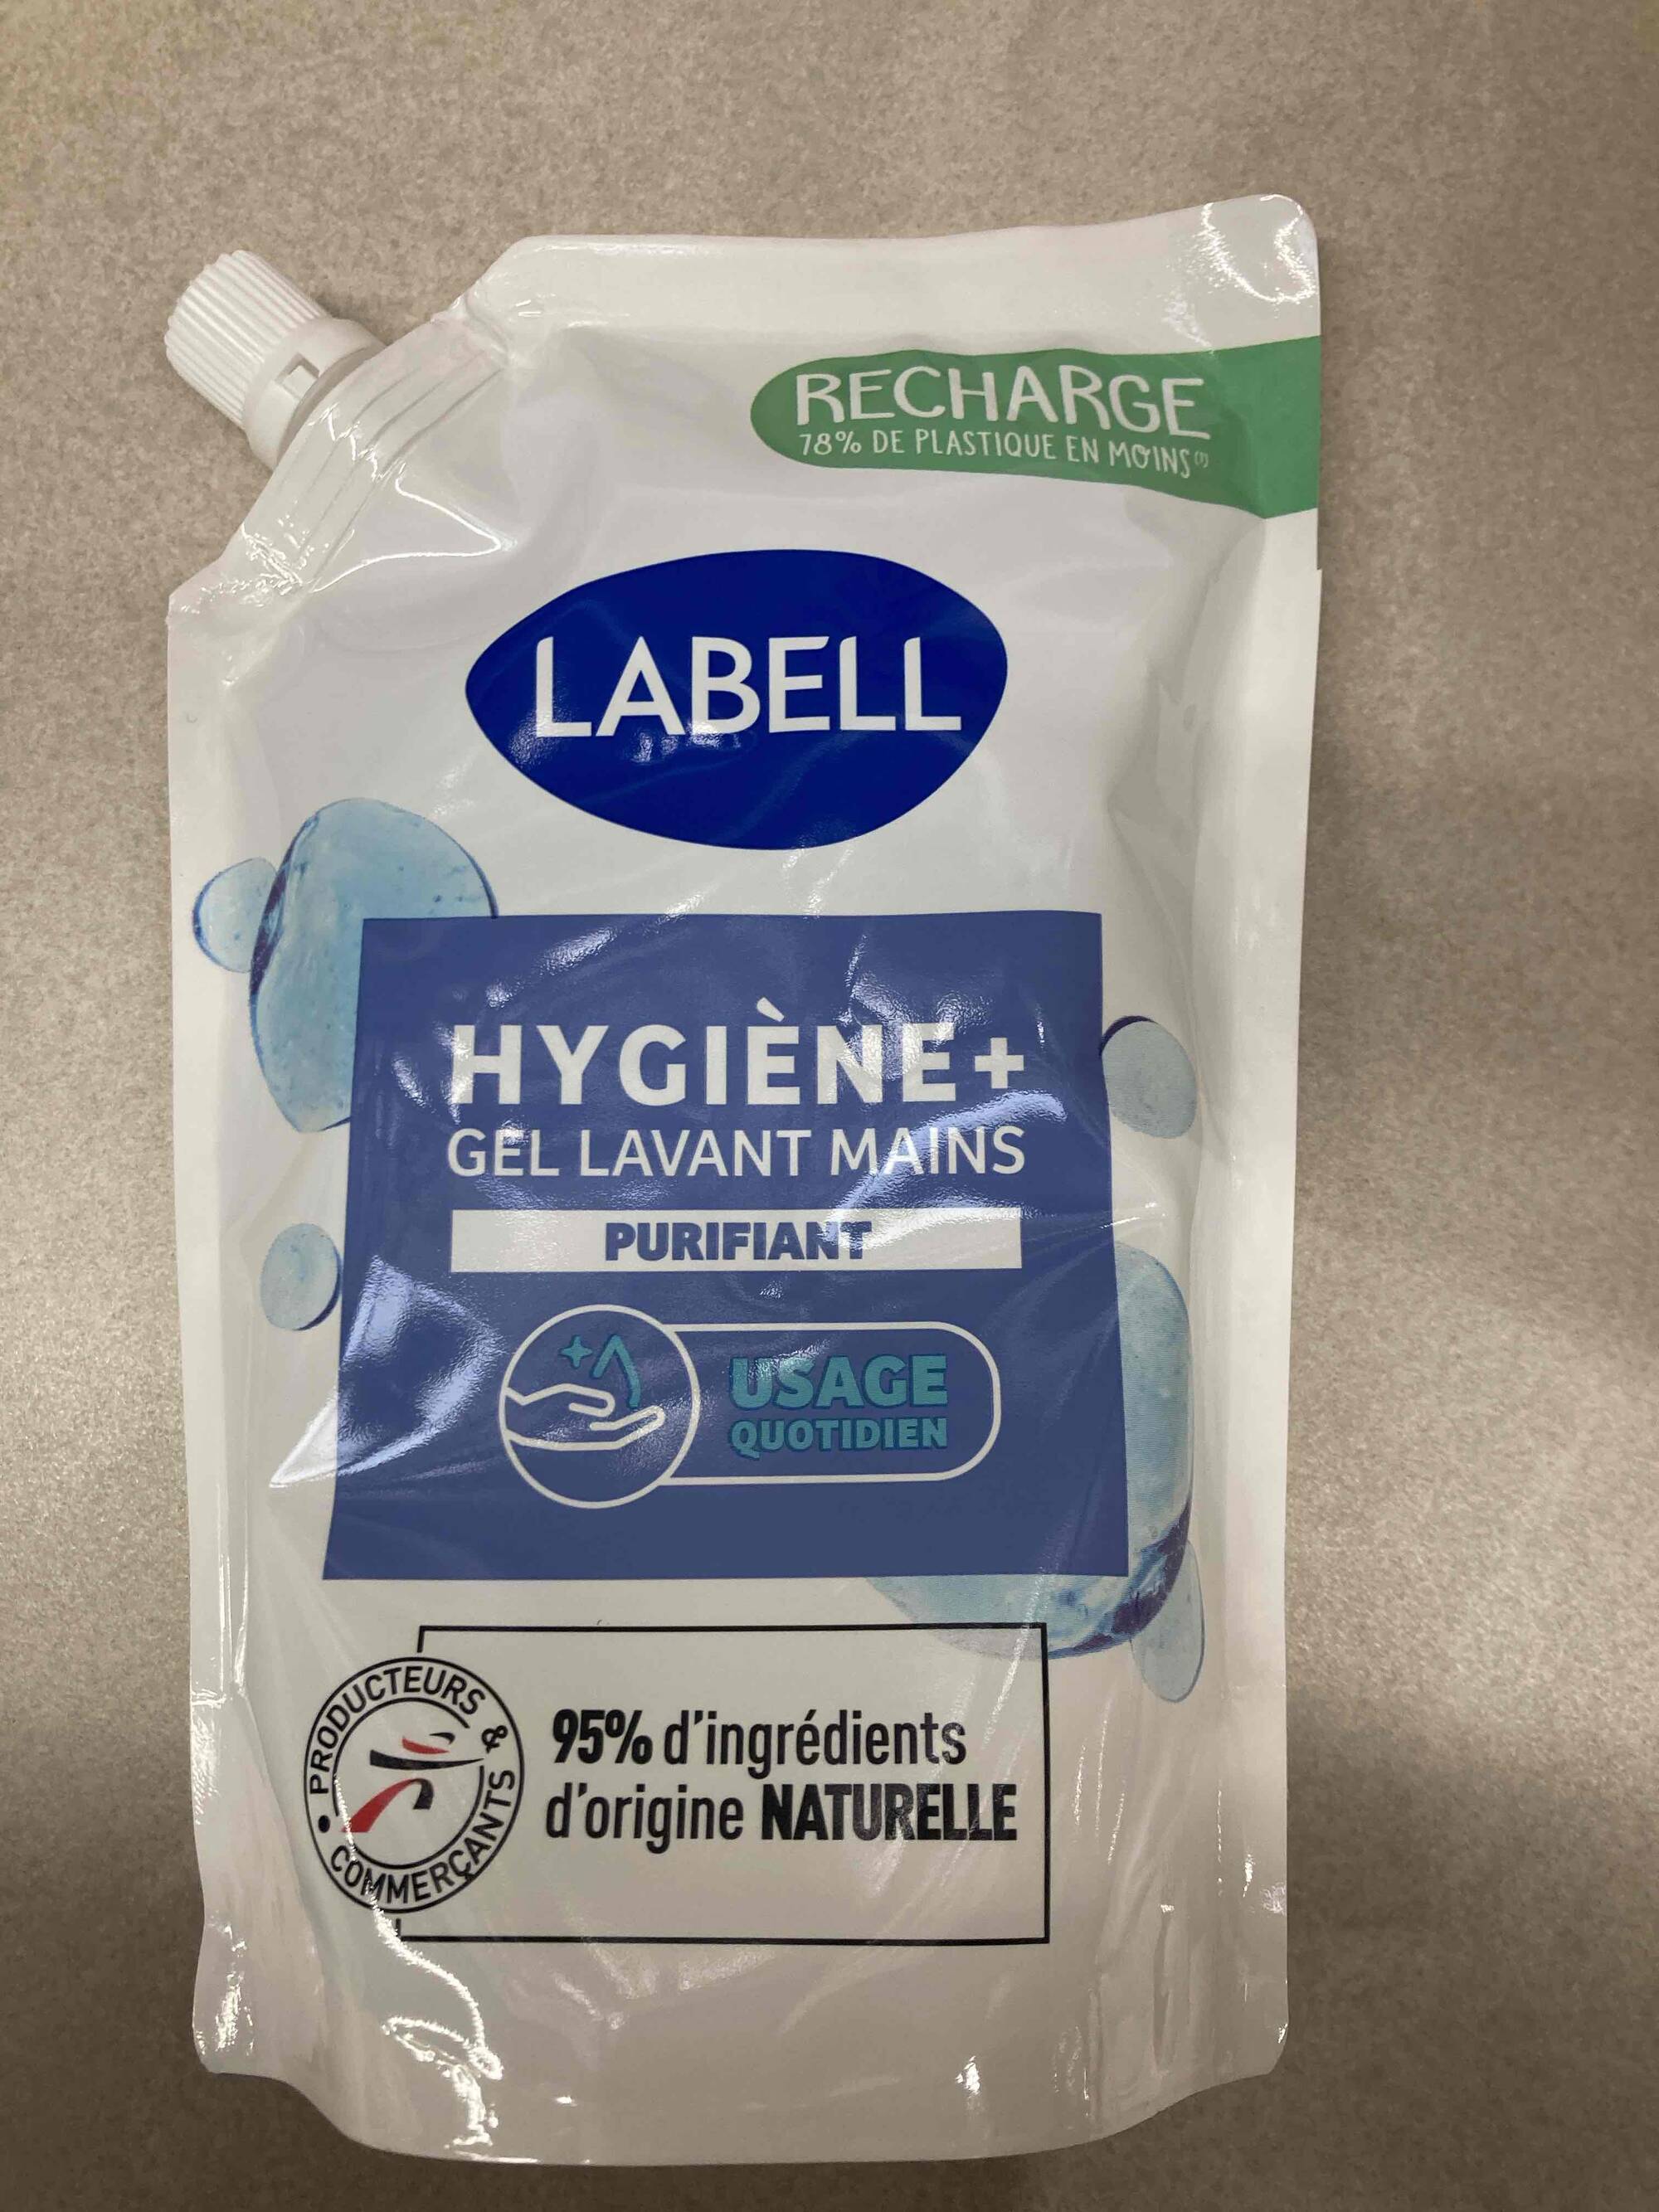 LABELL - Hygiène + gel lavant mains purifiant